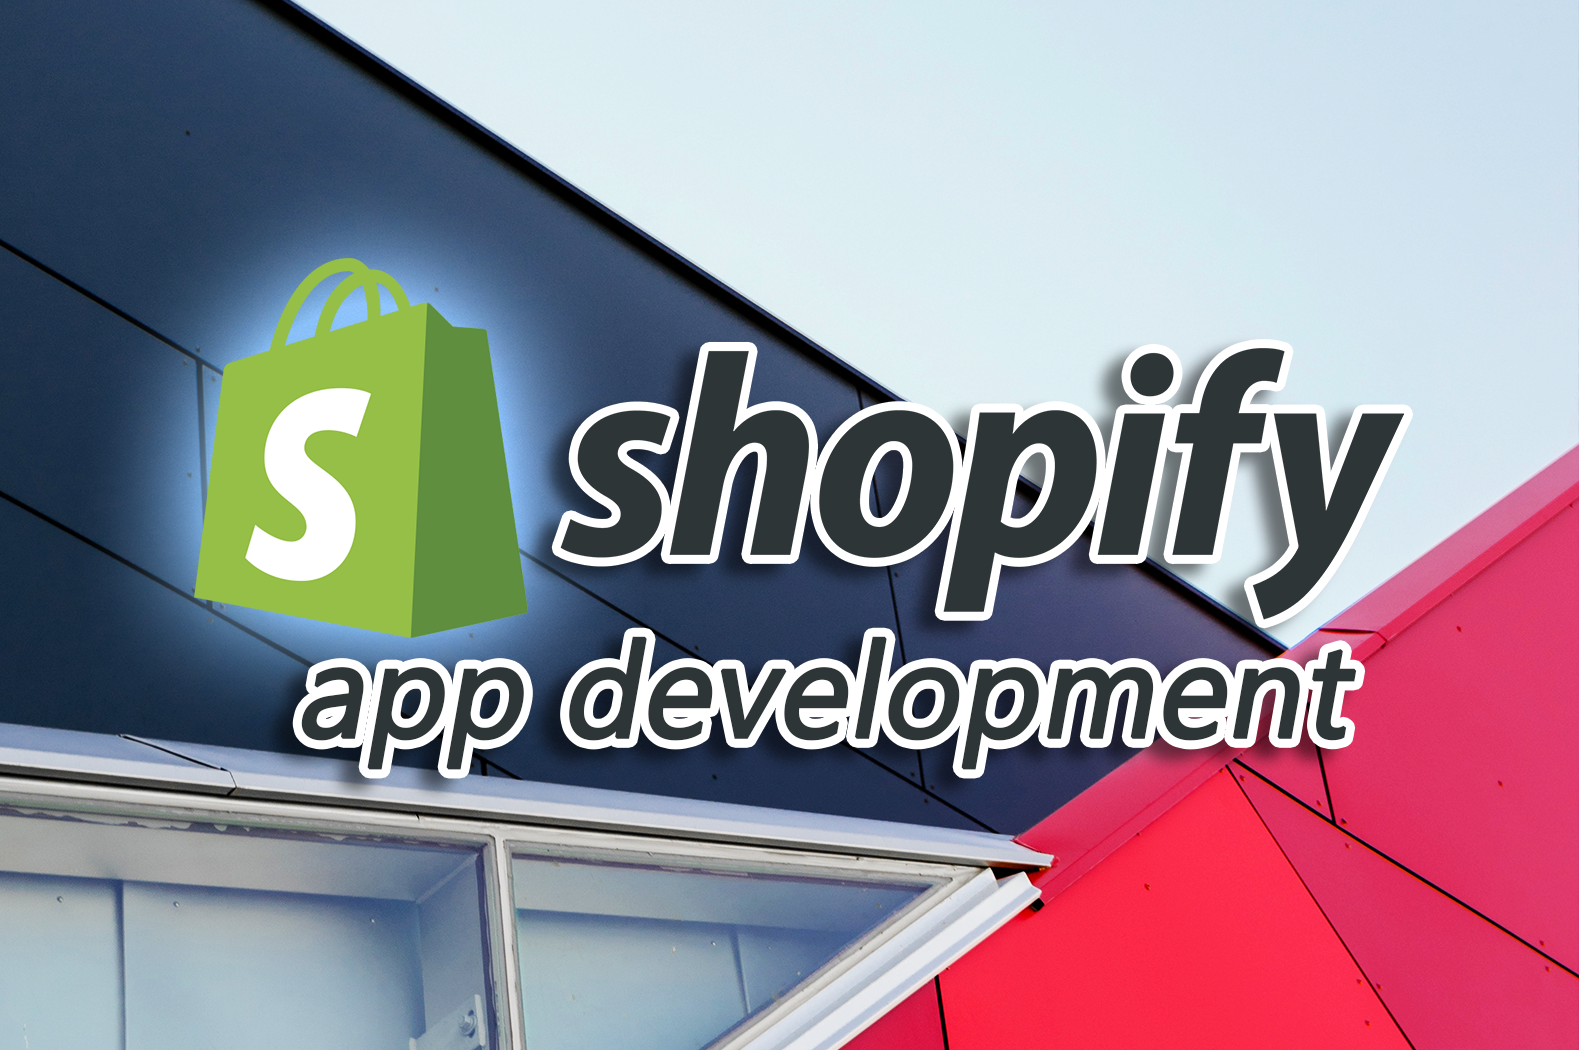 instafeed app shopify